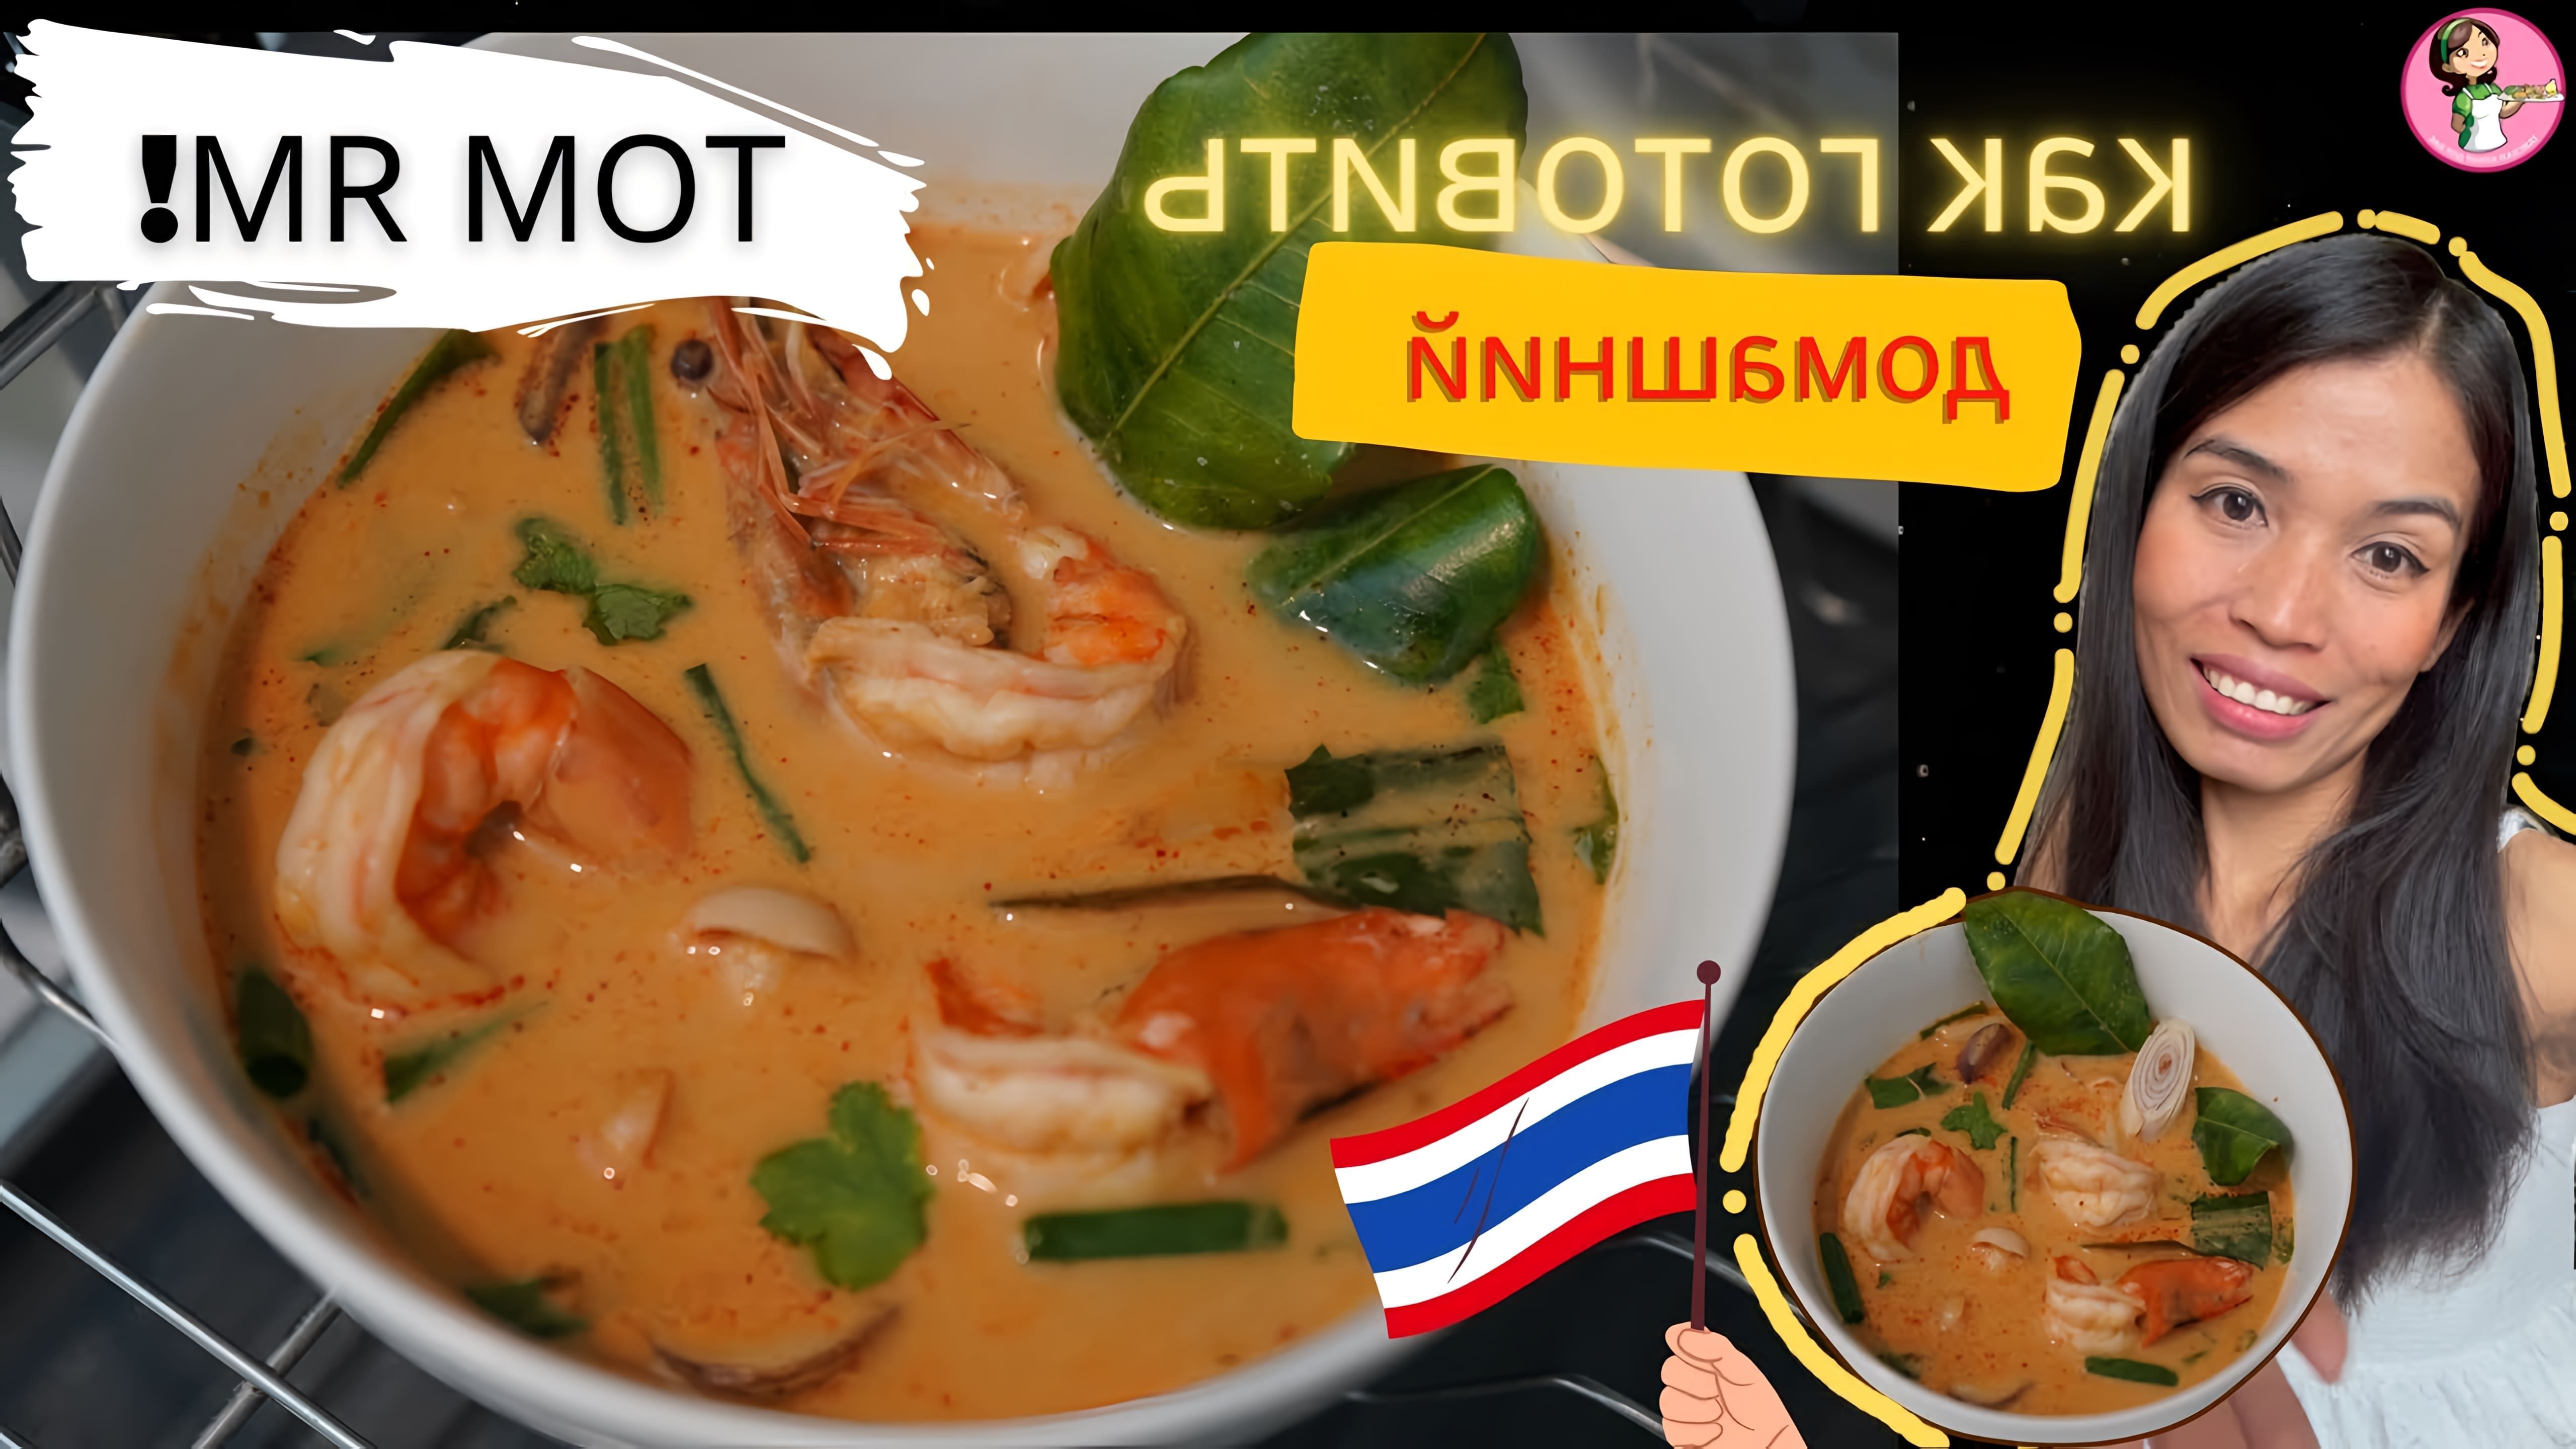 В этом видео демонстрируется рецепт приготовления супа Том Ям, популярного блюда тайской кухни